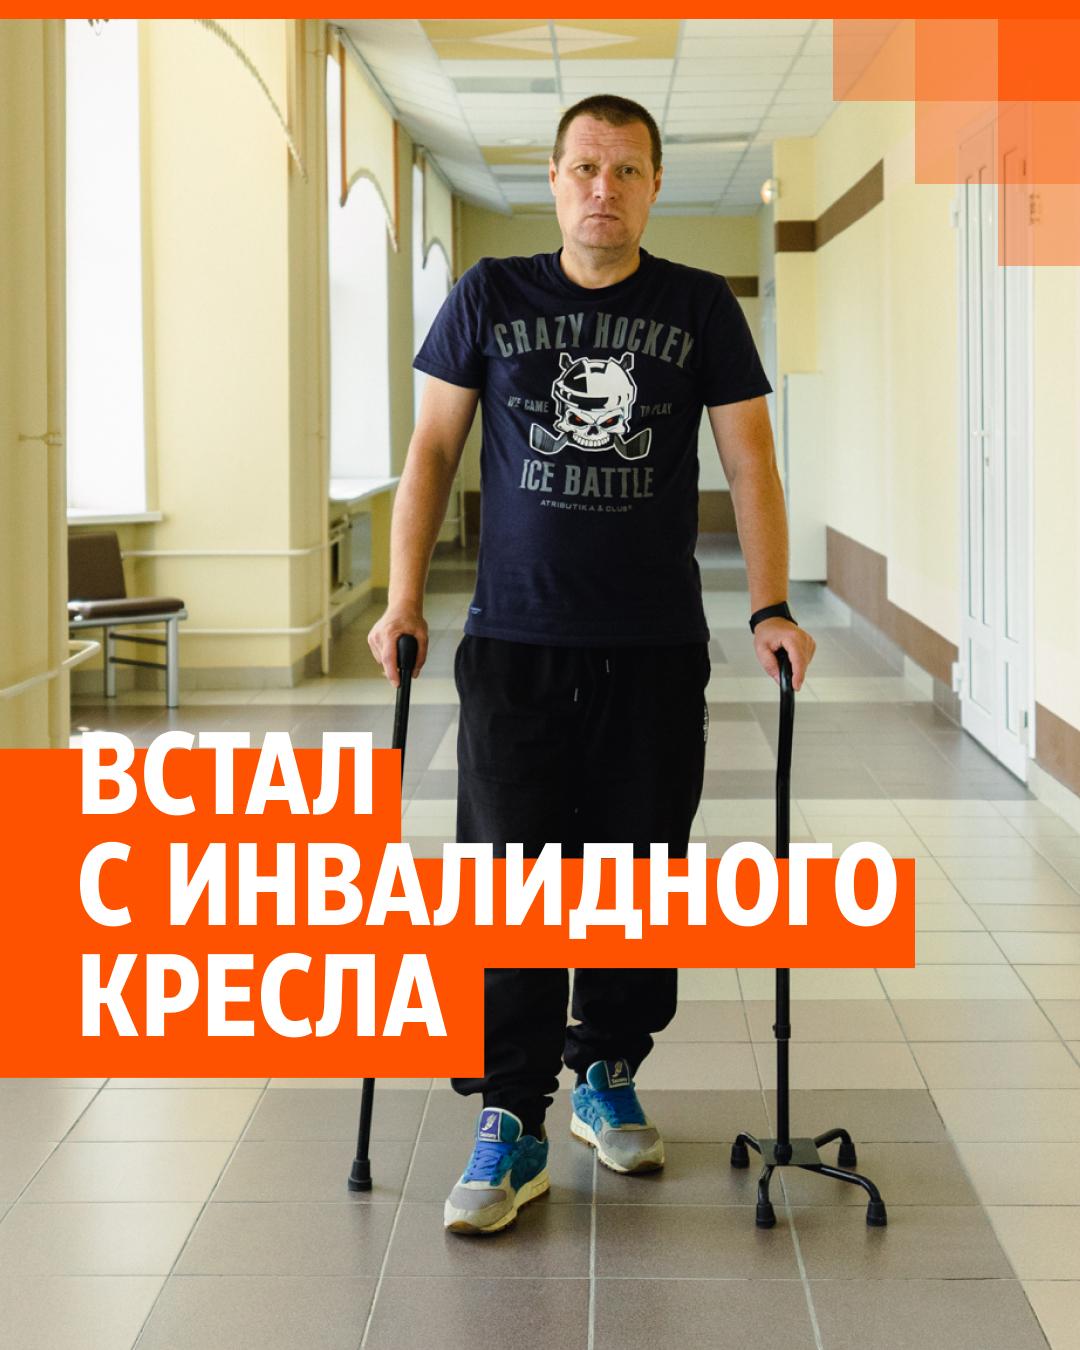 Спорт в инвалидной коляске: истории людей с неограниченными возможностями